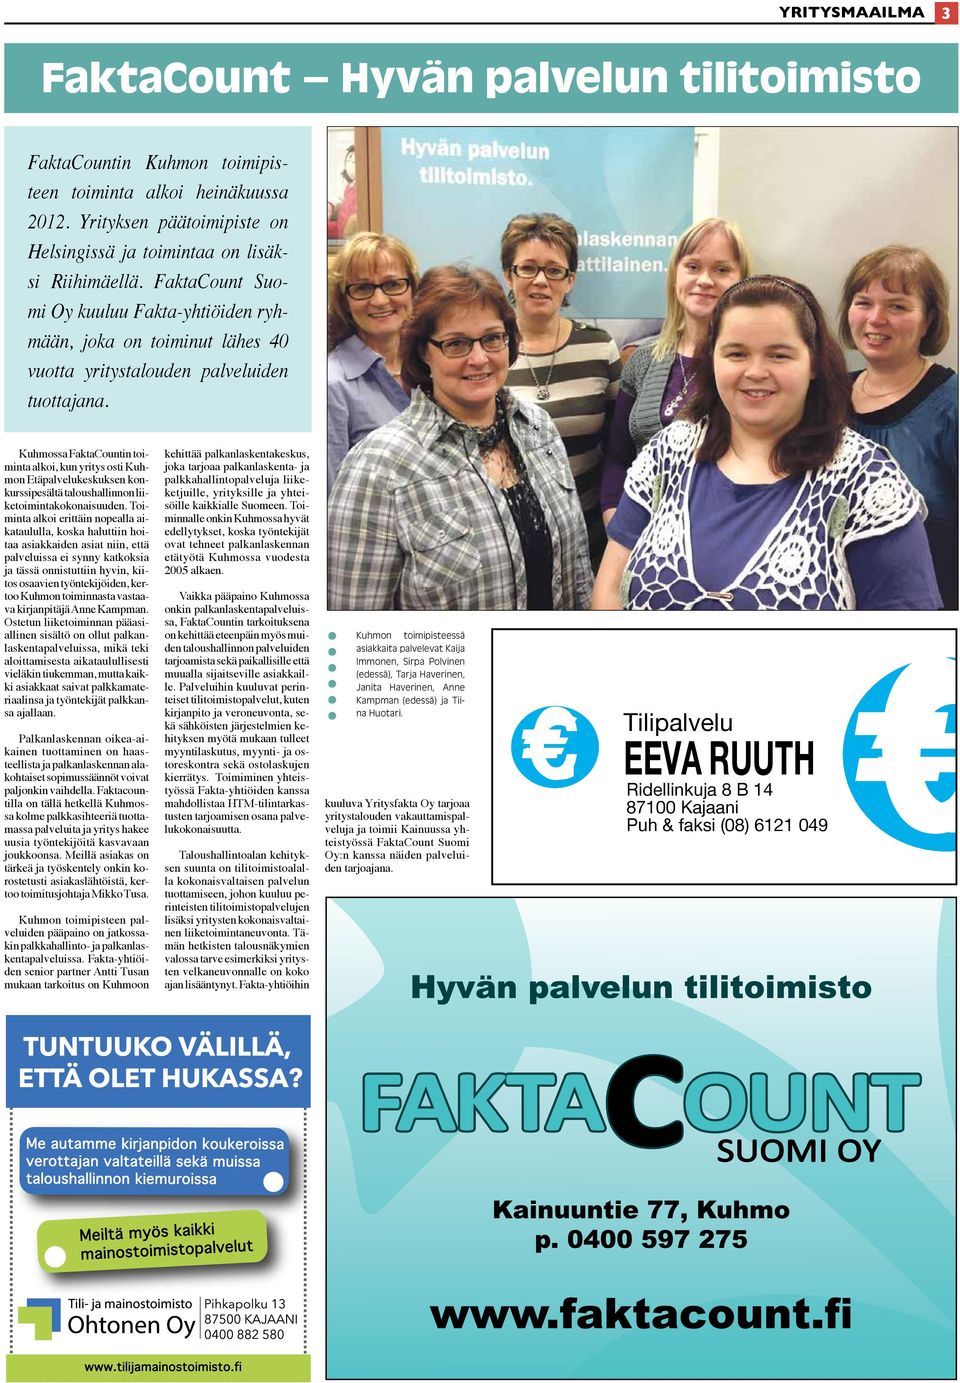 Kuhmossa FaktaCountin toiminta alkoi, kun yritys osti Kuhmon Etäpalvelukeskuksen konkurssipesältä taloushallinnon liiketoimintakokonaisuuden.